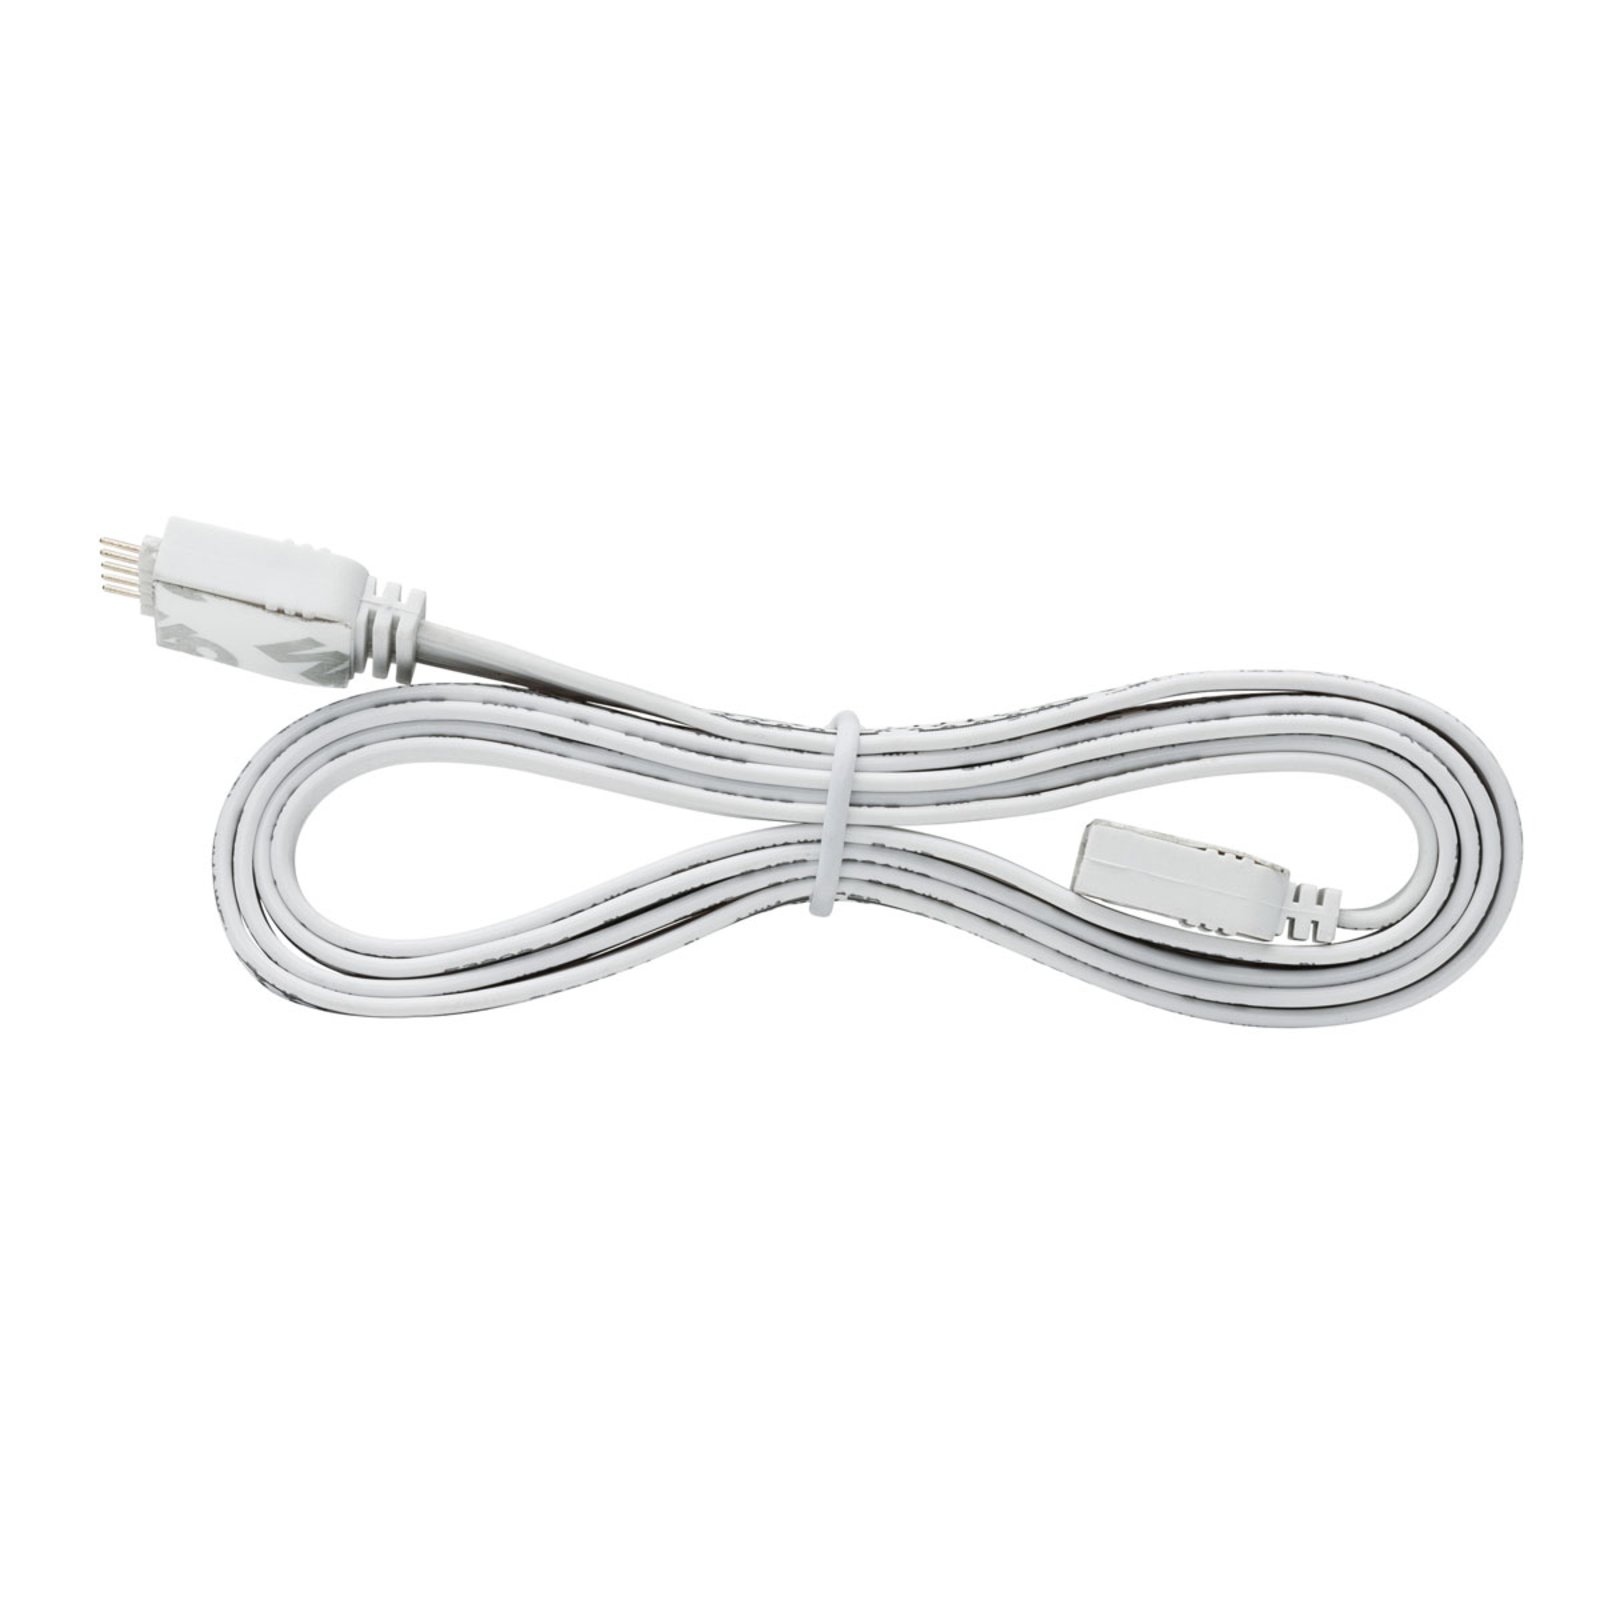 Paulmann MaxLED câble connexion flex 1 m, blanc